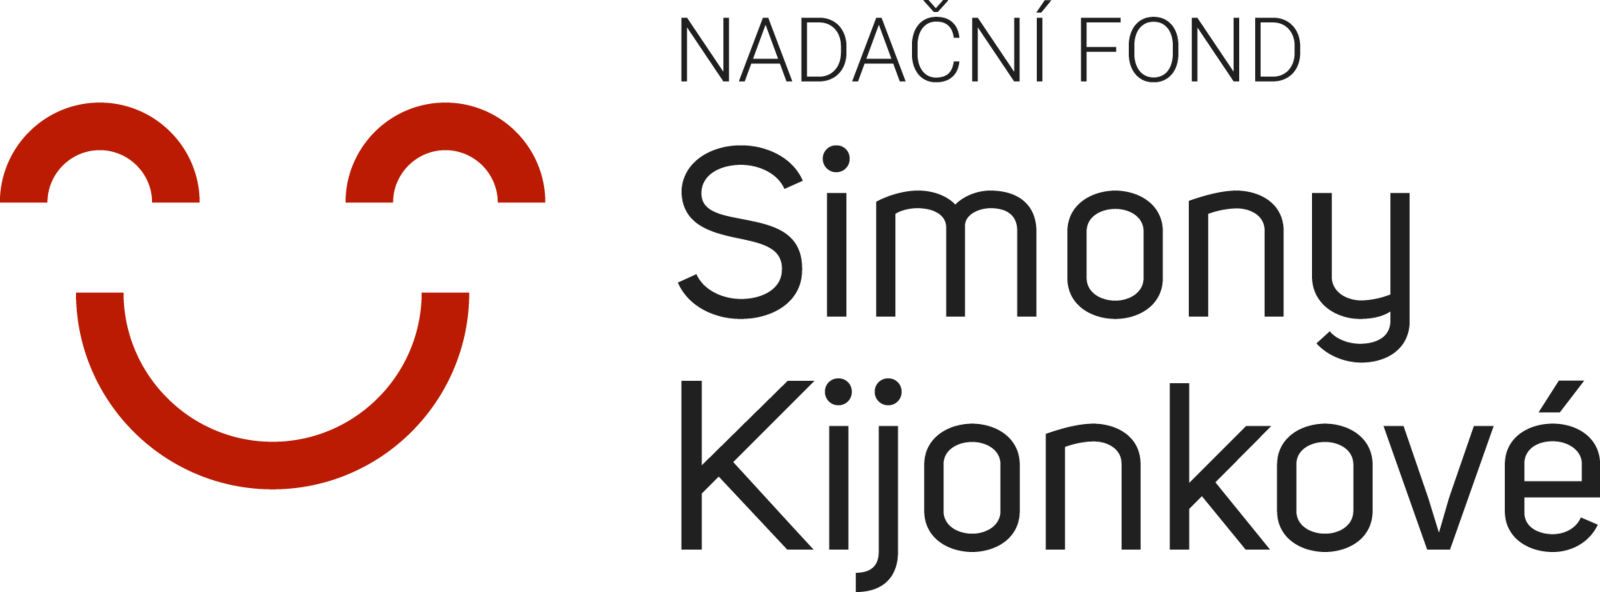 Logo NFSK.png